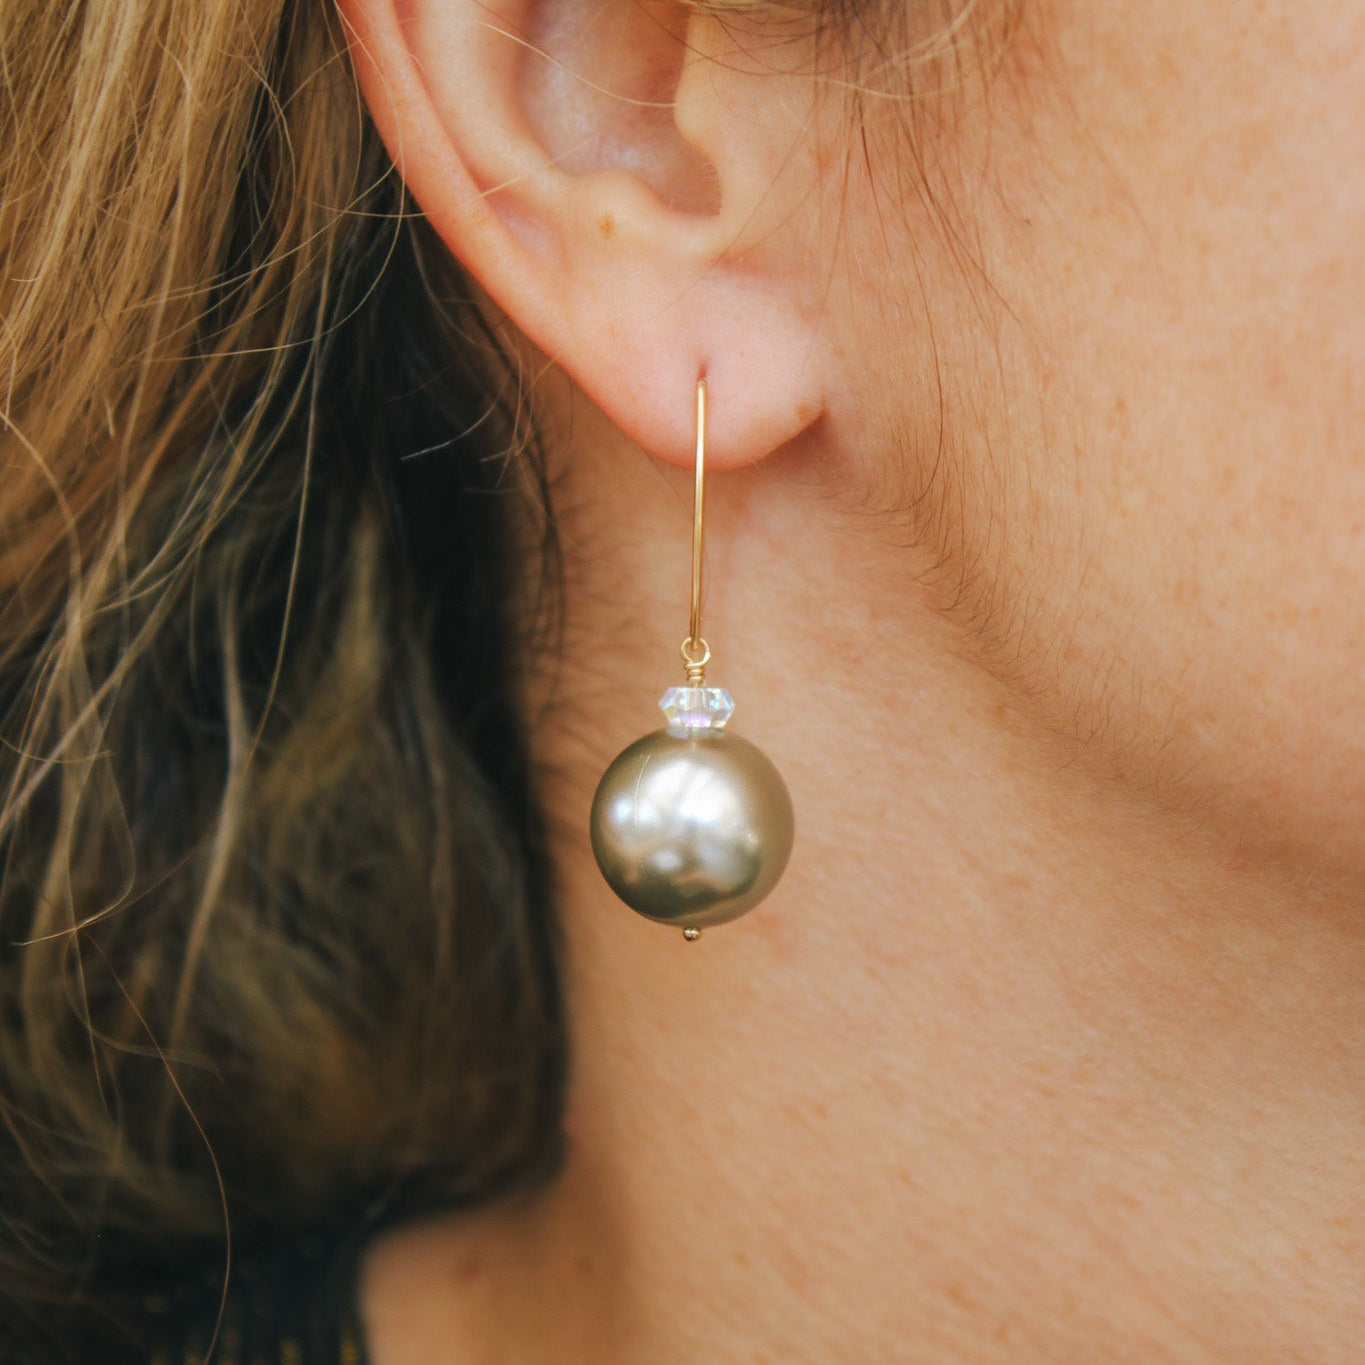 Shell Pearl Earring DropsDebra PyeattEarrings